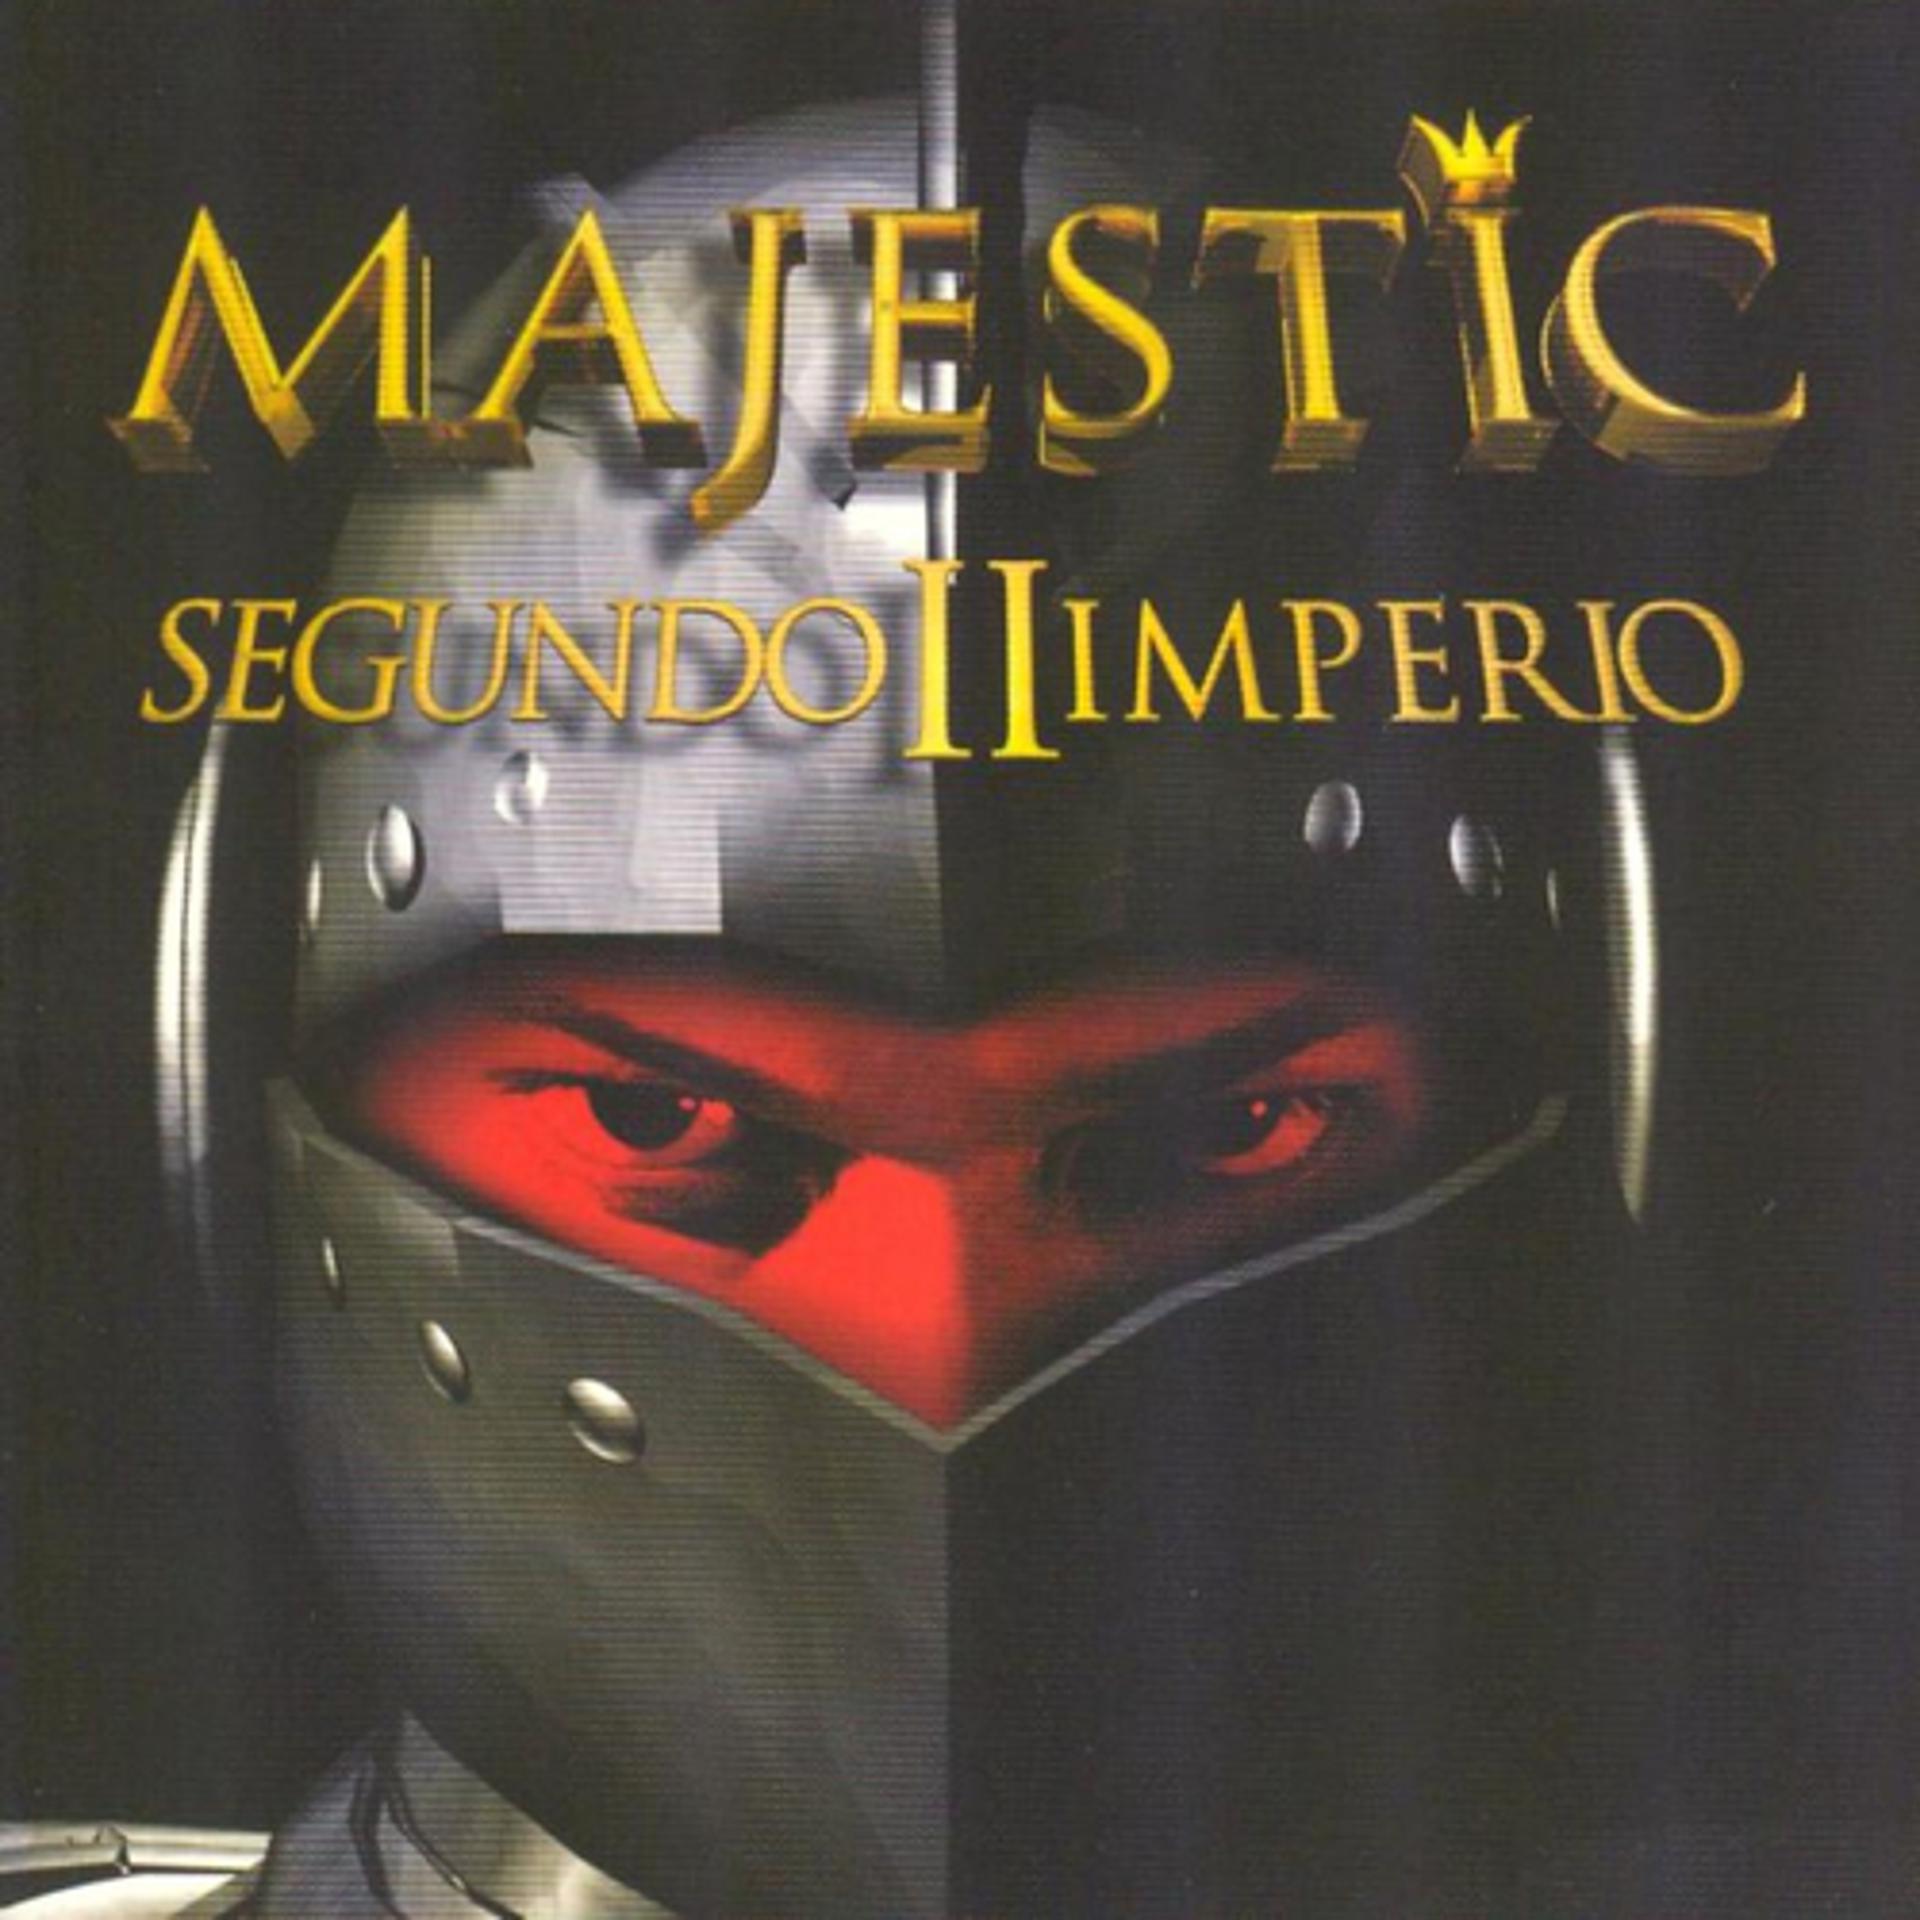 Постер альбома Majestic Segundo II Imperio